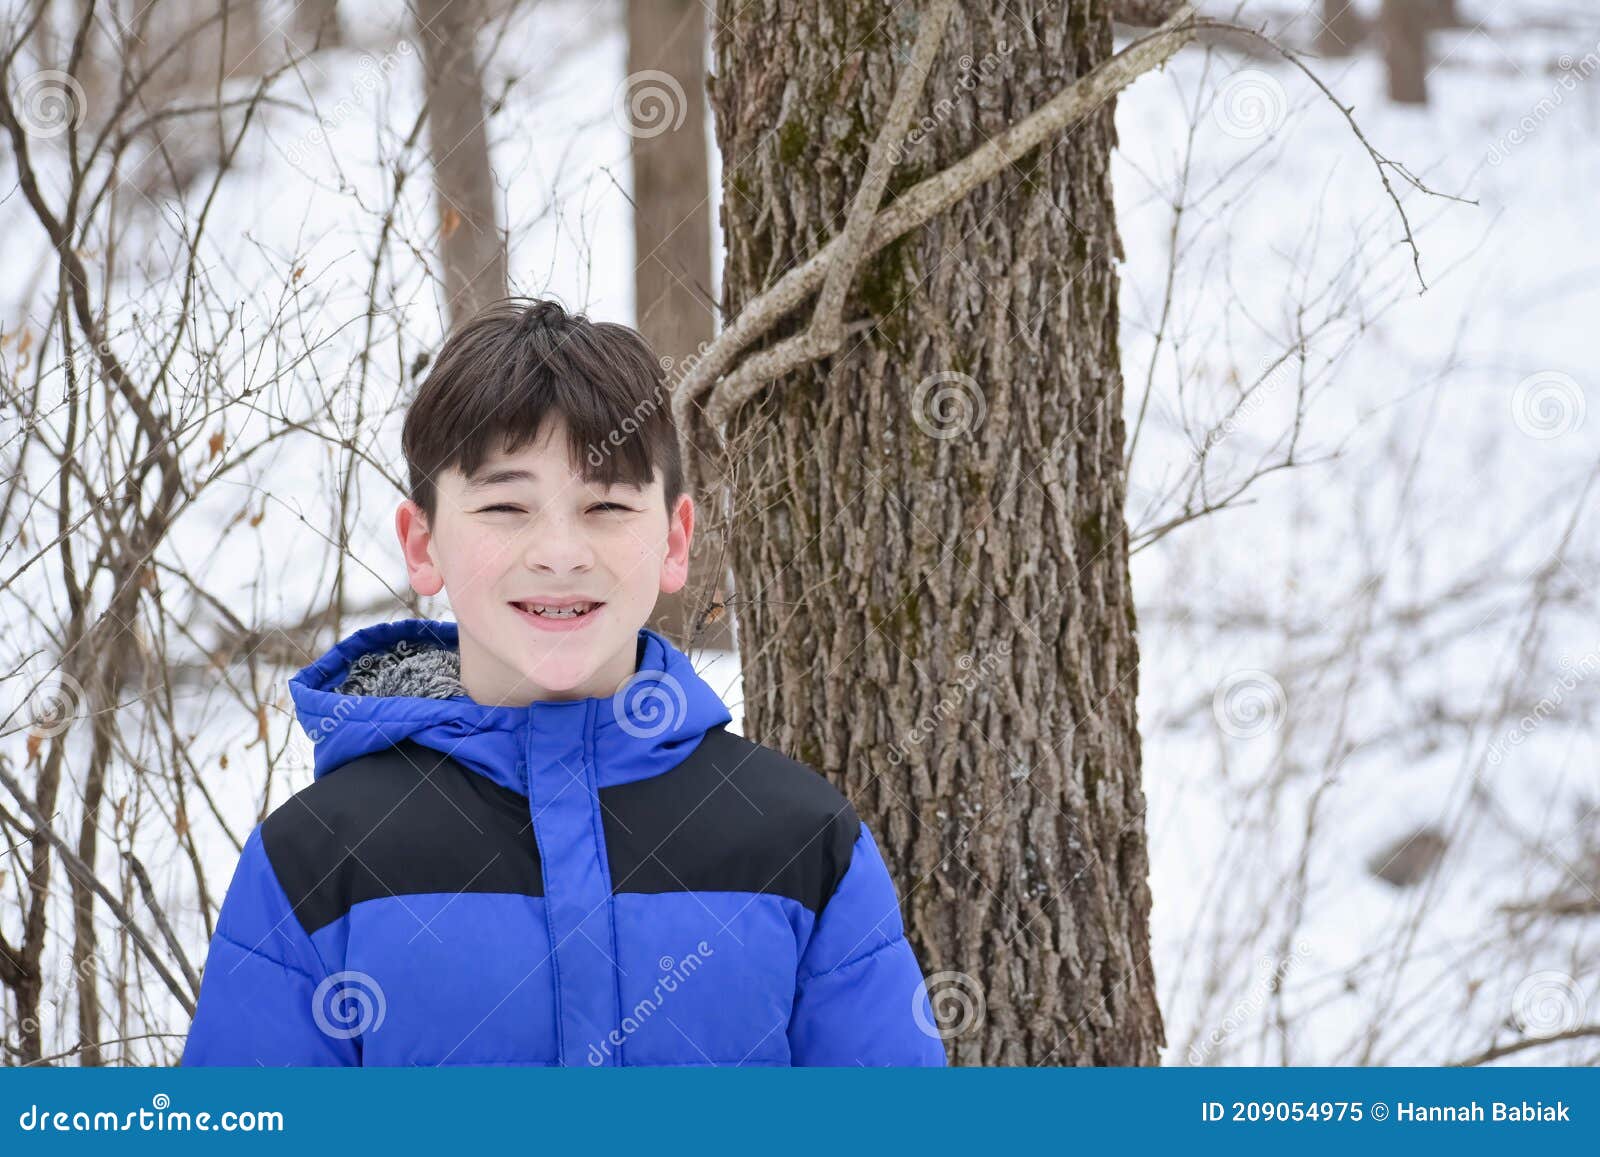 happy boy in forest in winter